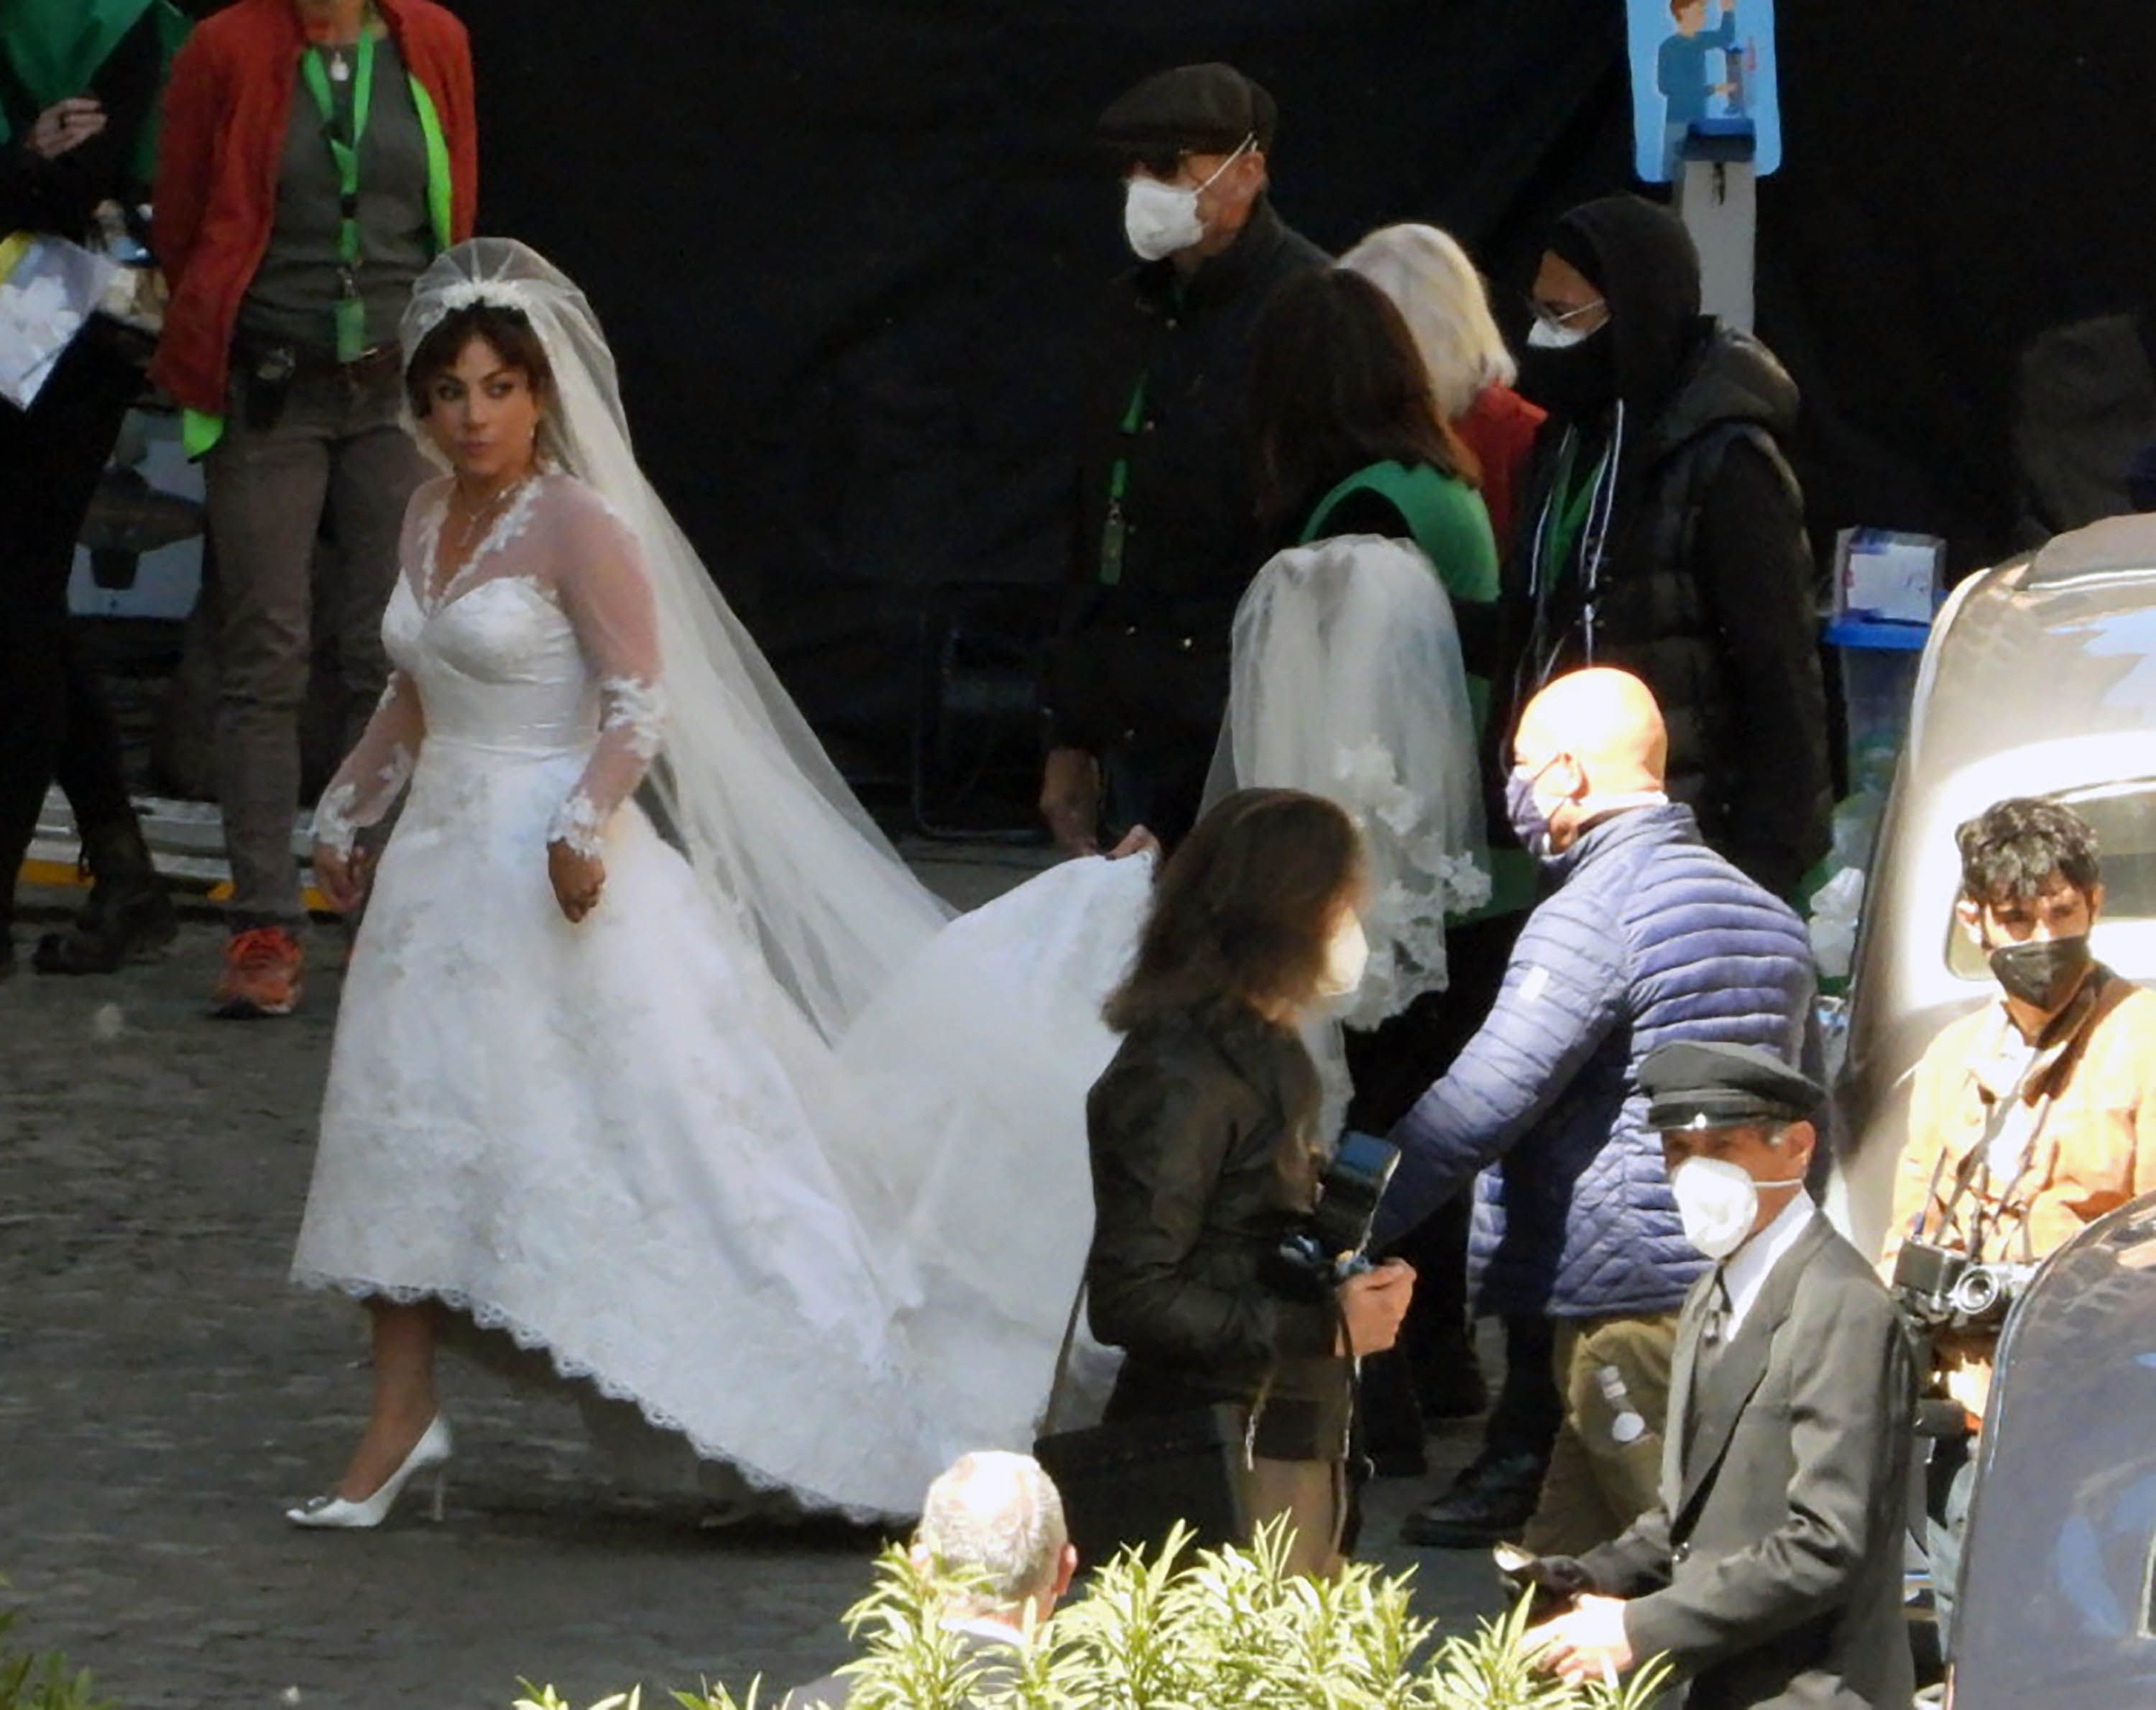 Lady Gaga & Adam Driver Film Wedding Scene for 'House of Gucci